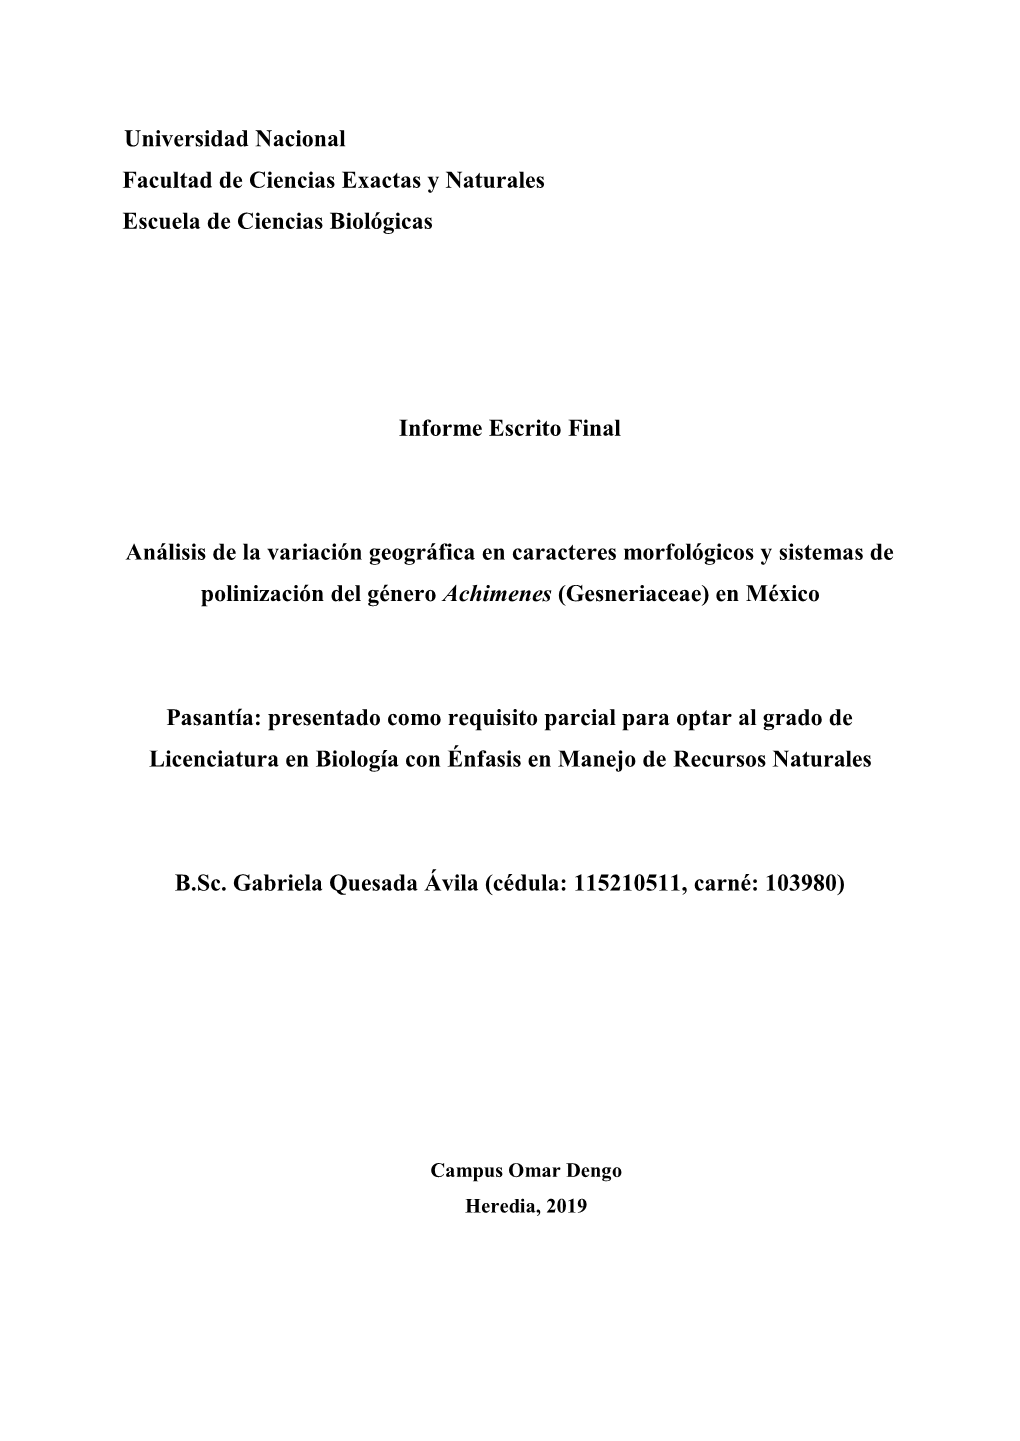 Análisis De La Variación Geográfica En Caracteres Morfológicos Y Sistemas De Polinización Del Género Achimenes (Gesneriaceae) En México